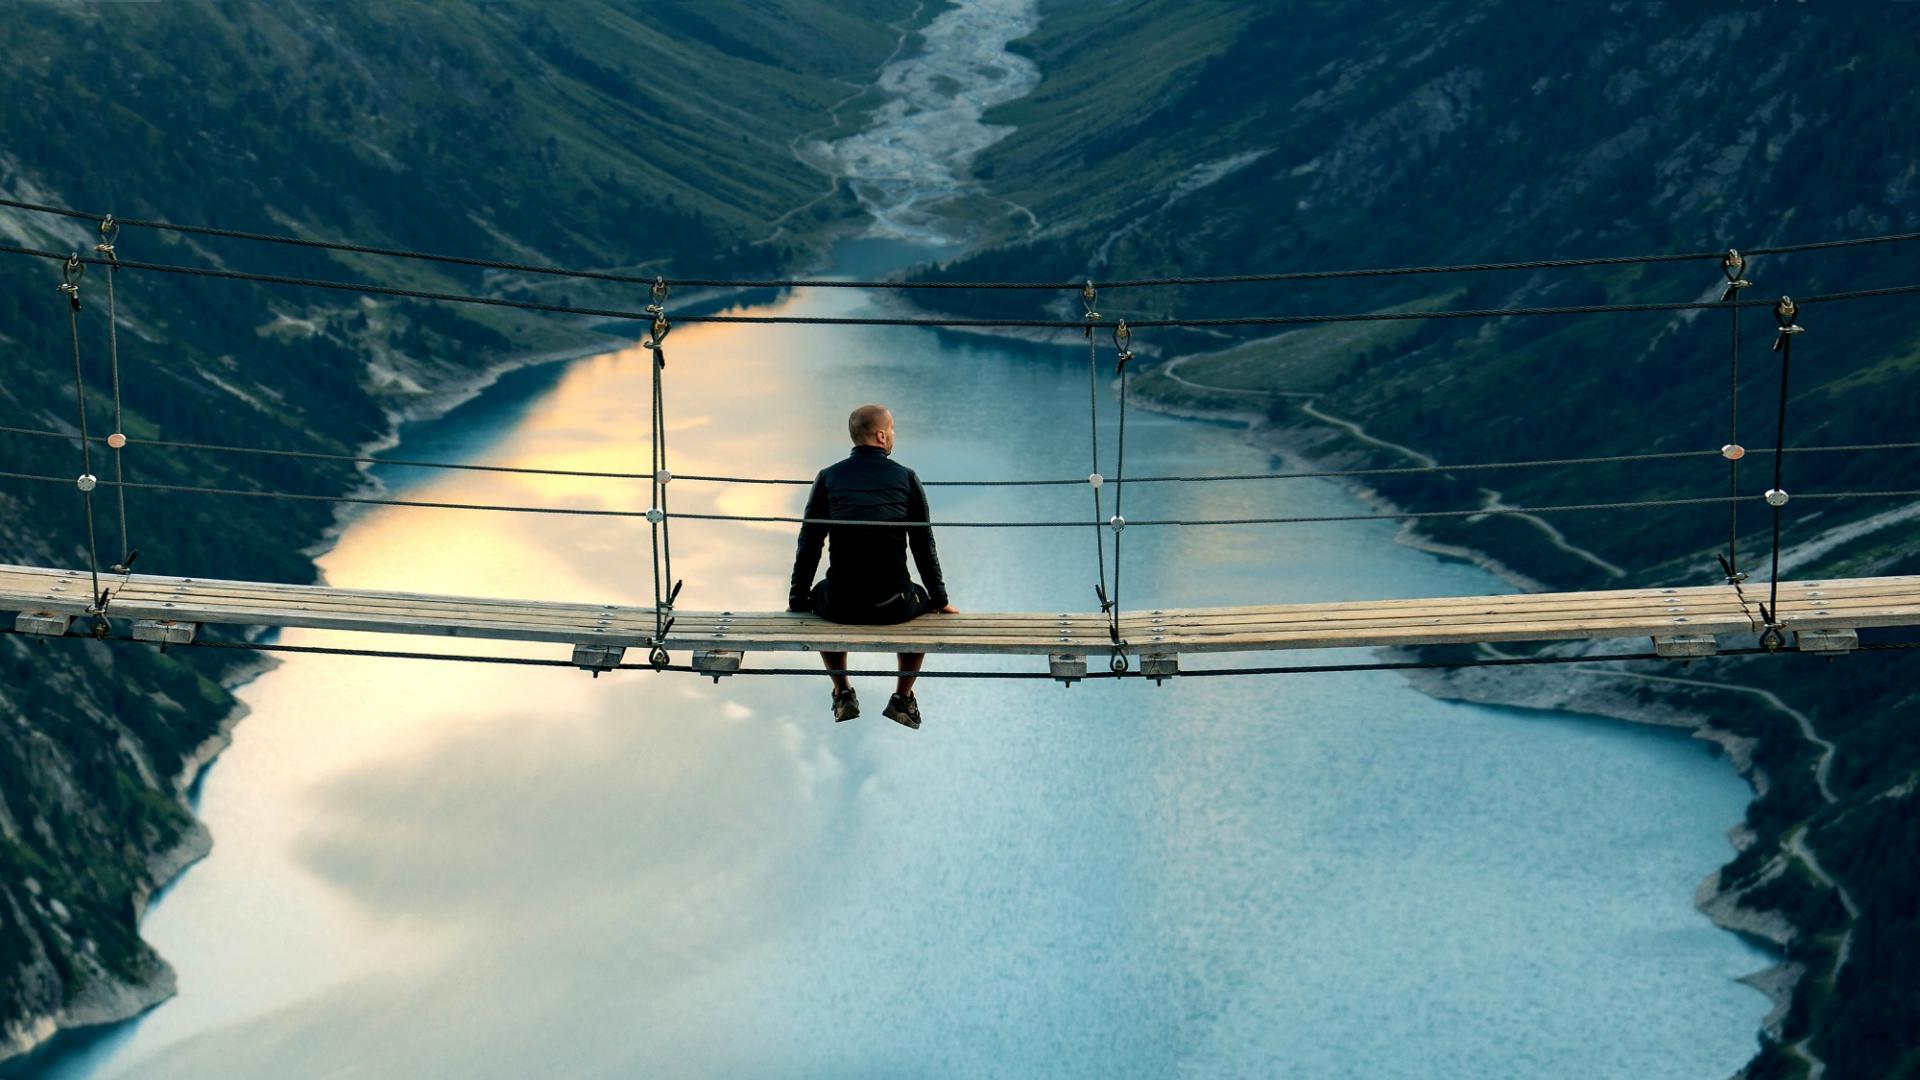 Ein Mann sitzt auf einer Hängebrücke und blickt auf einen See und im Hintergrund ist ein fantastisches Bergpanorama zu sehen.